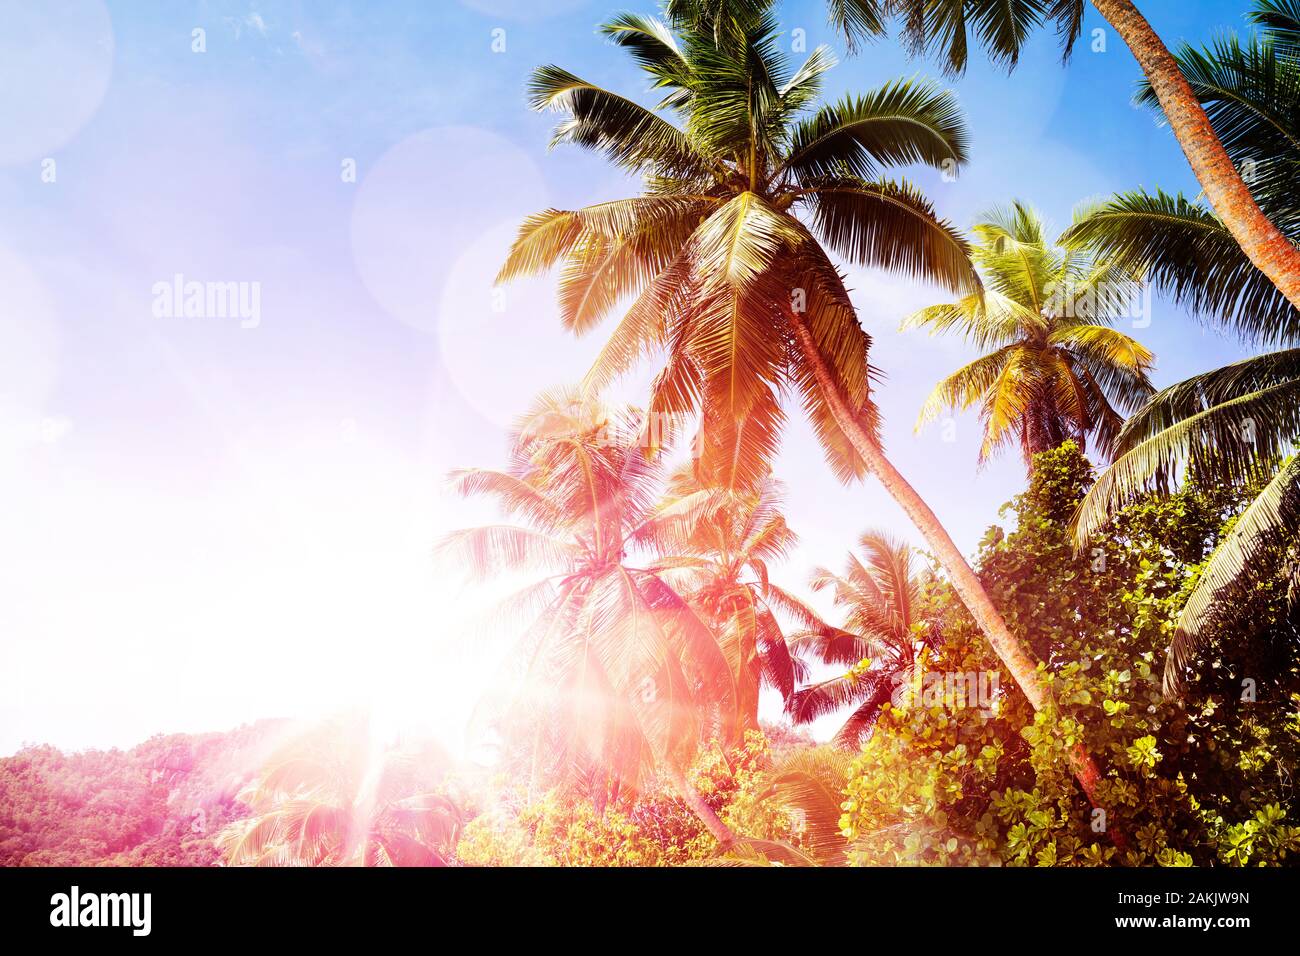 Vista escénica de palmeras con los brillos de la lente contra el cielo azul claro Foto de stock